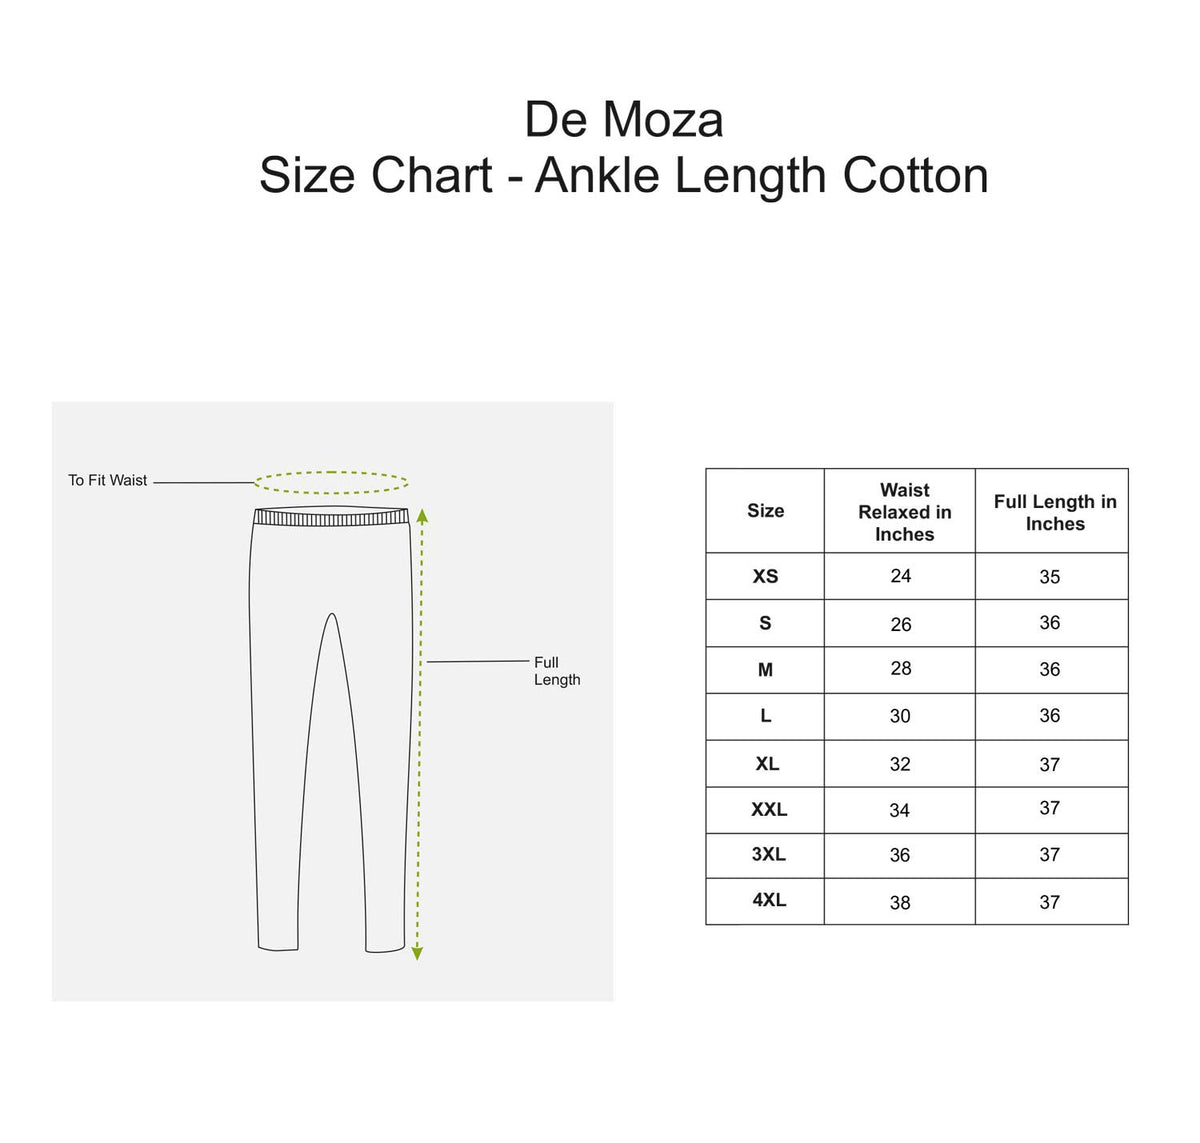 De Moza Ladies Ankle Length Leggings Navy Blue - De Moza (8780321475)